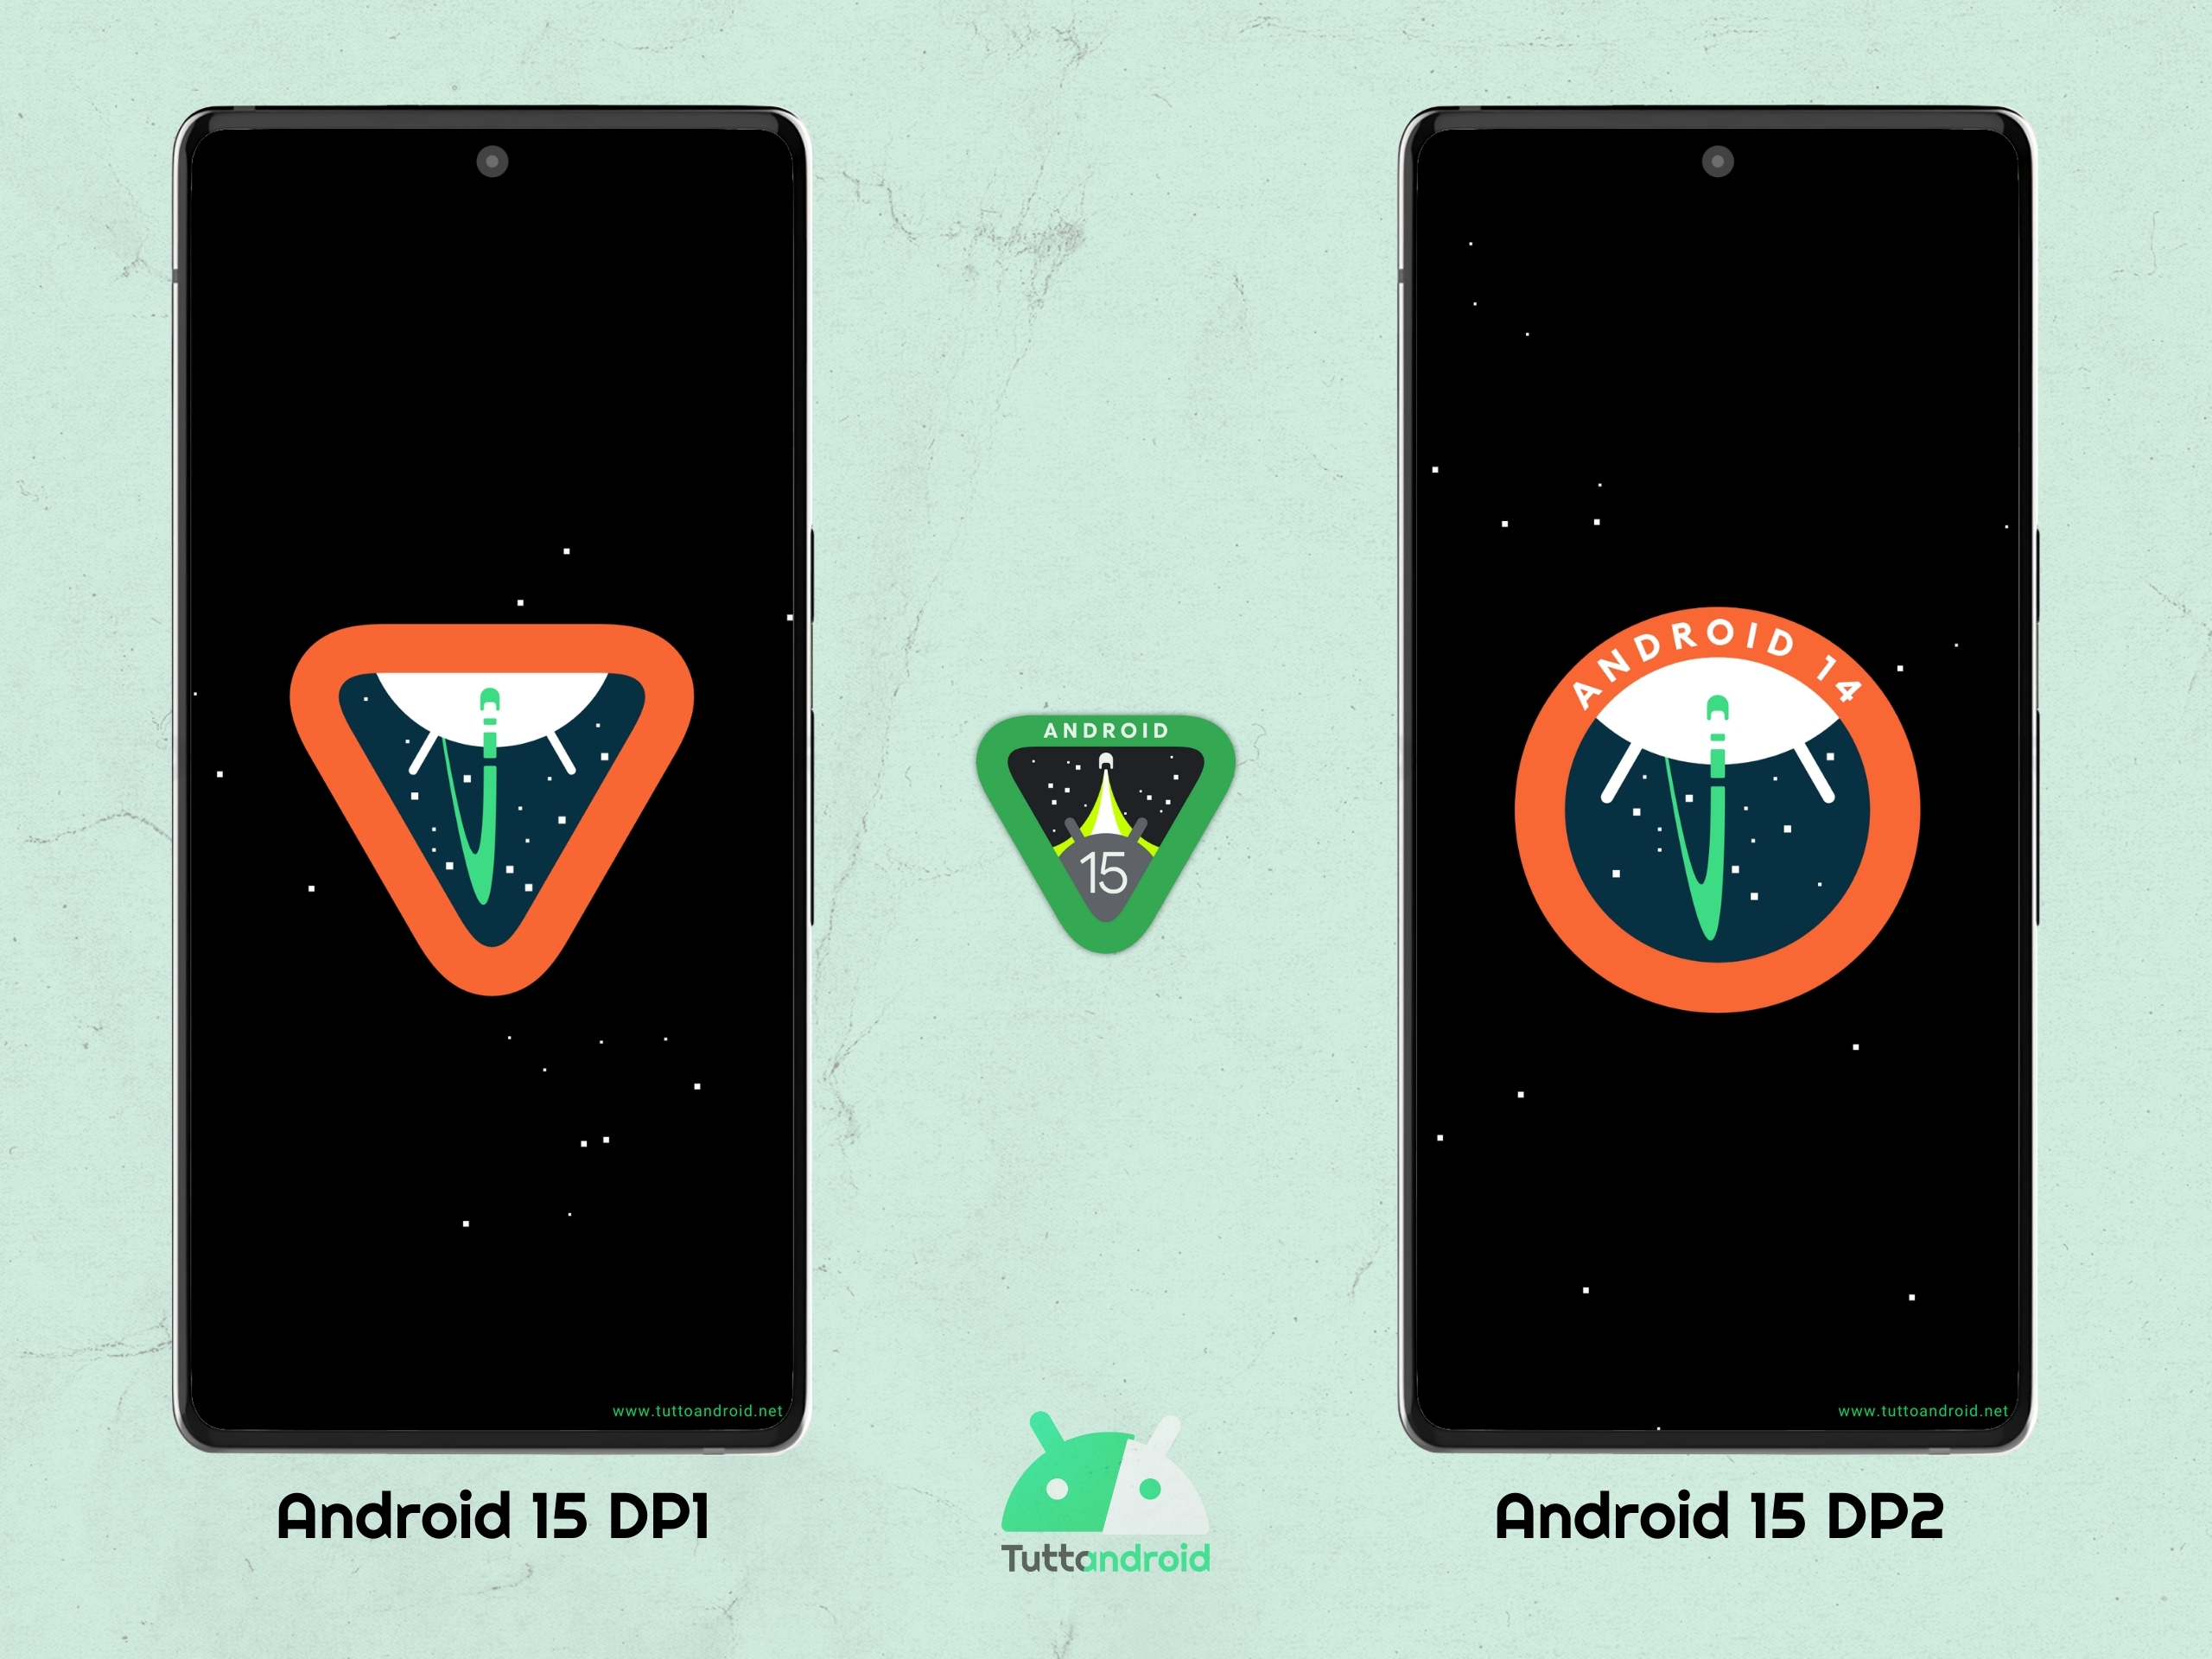 Con la DP2 di Android 15 torna l'easter egg "classico" di Android 14